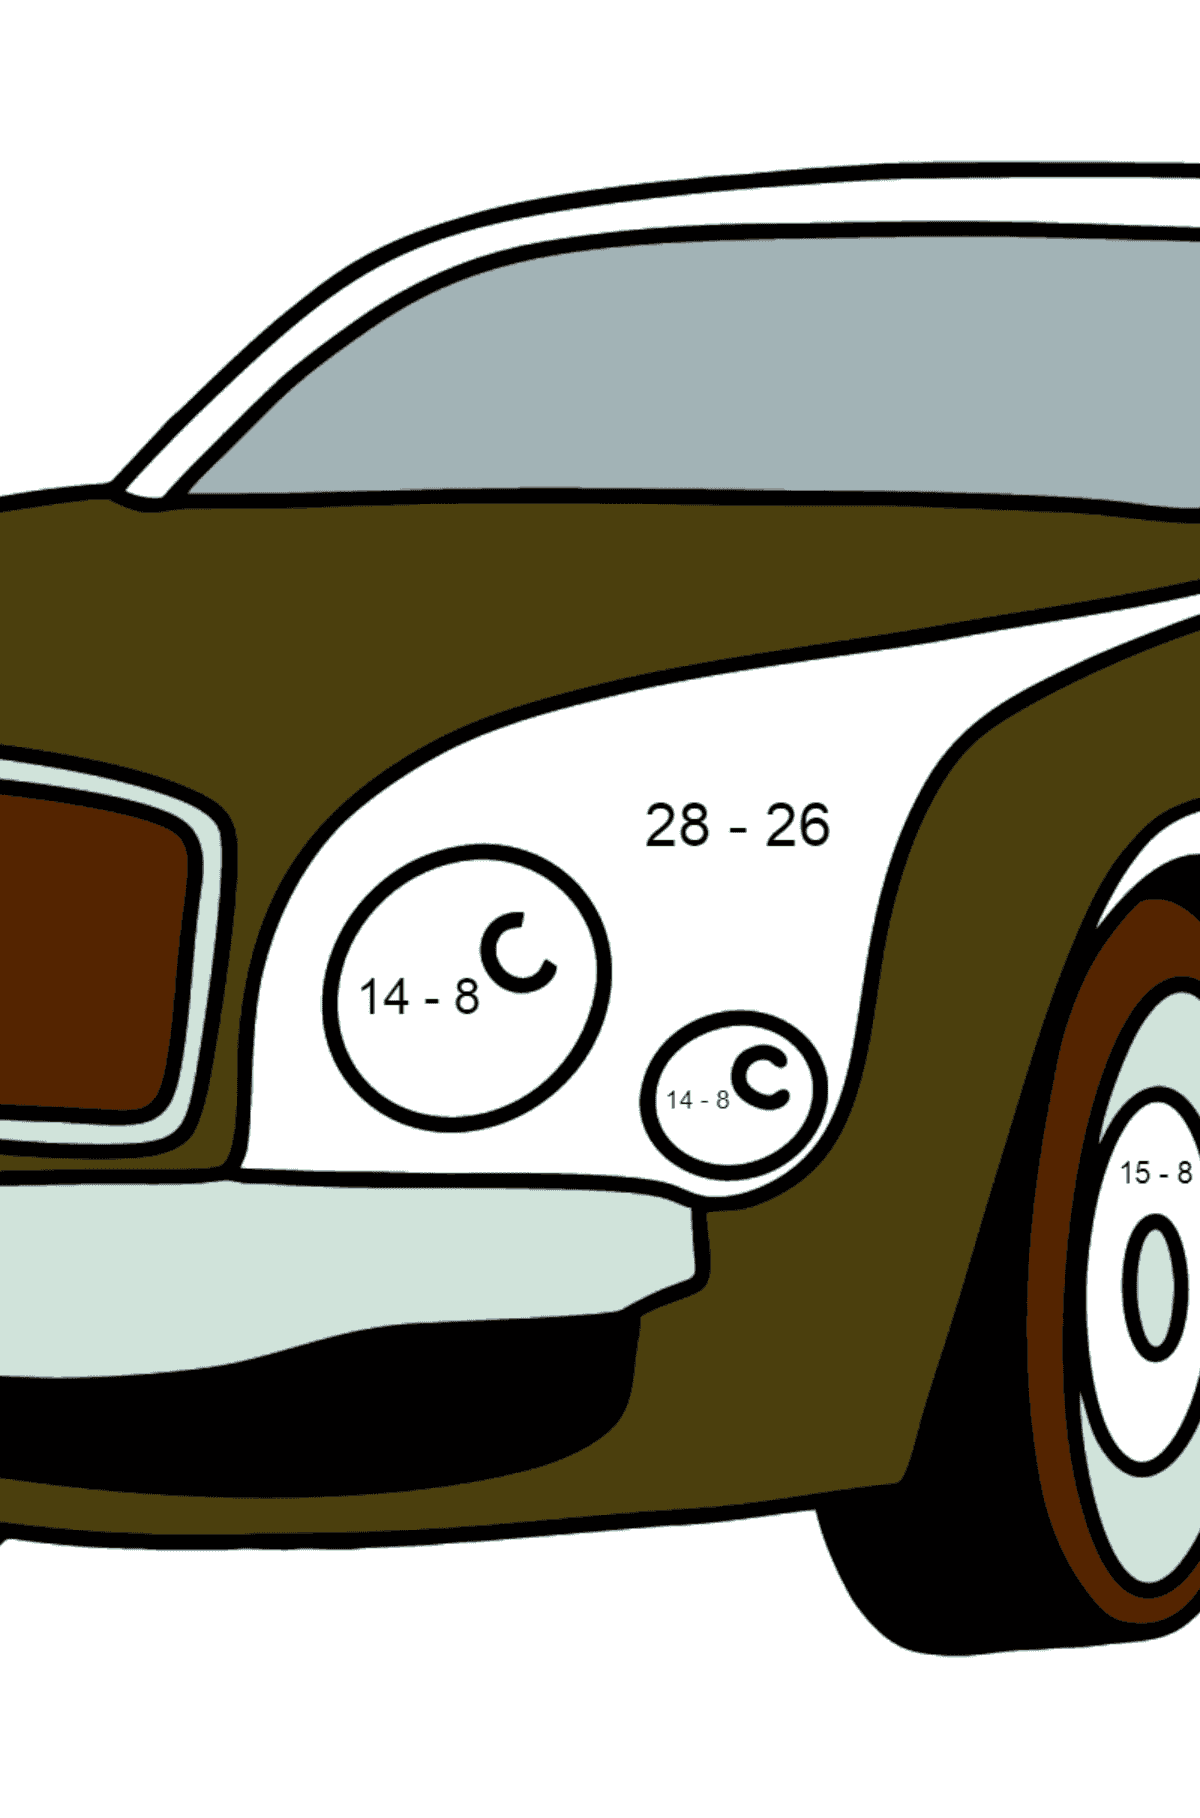 Bentley Mulsanne Auto Malvorlagen - Mathe Ausmalbilder - Subtraktion für Kinder